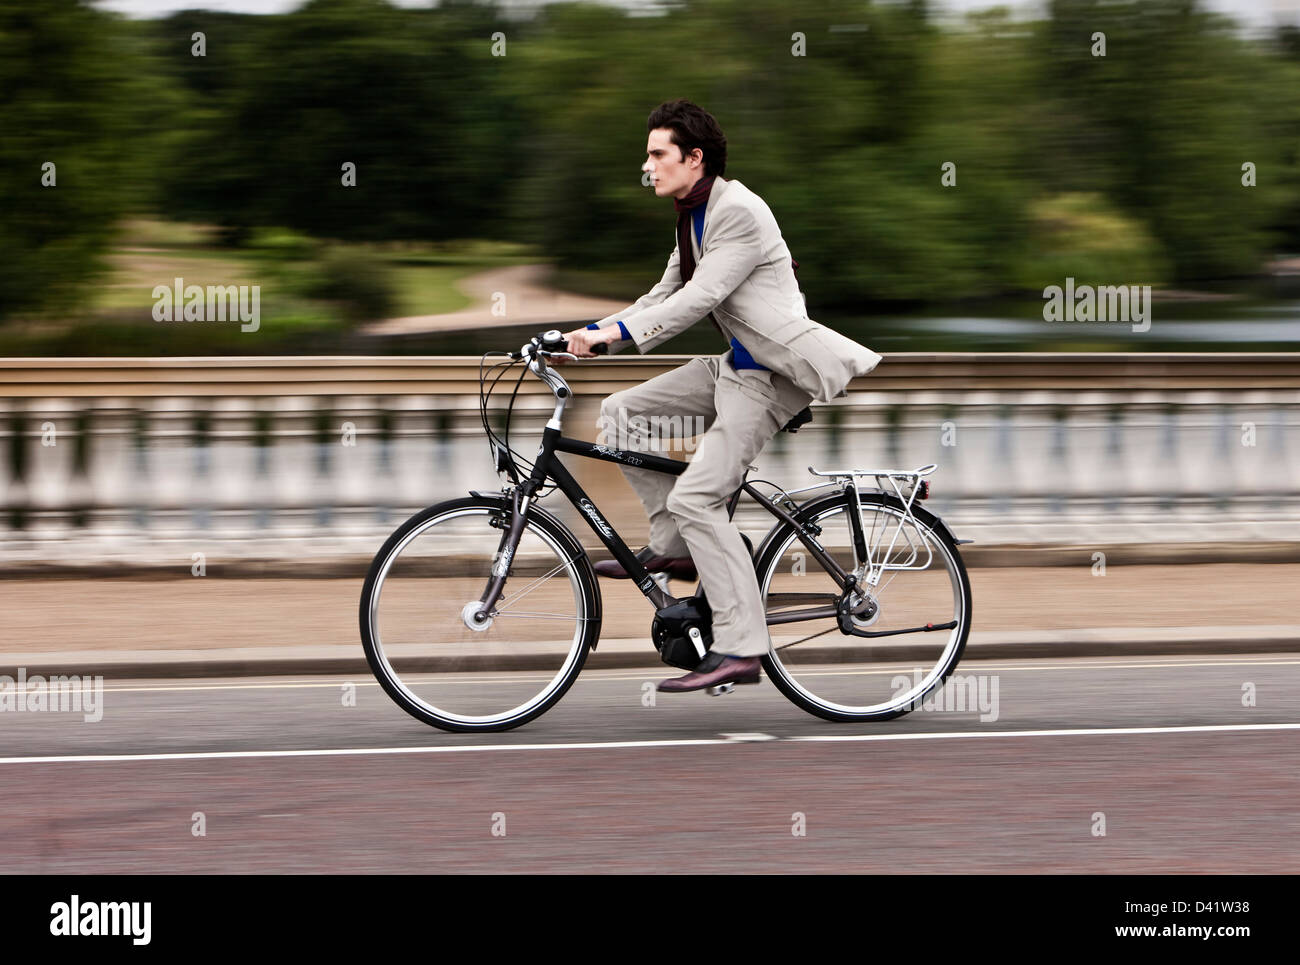 El exceso de velocidad, el hombre en bicicleta eléctrica, Londres, Reino Unido. Foto de stock